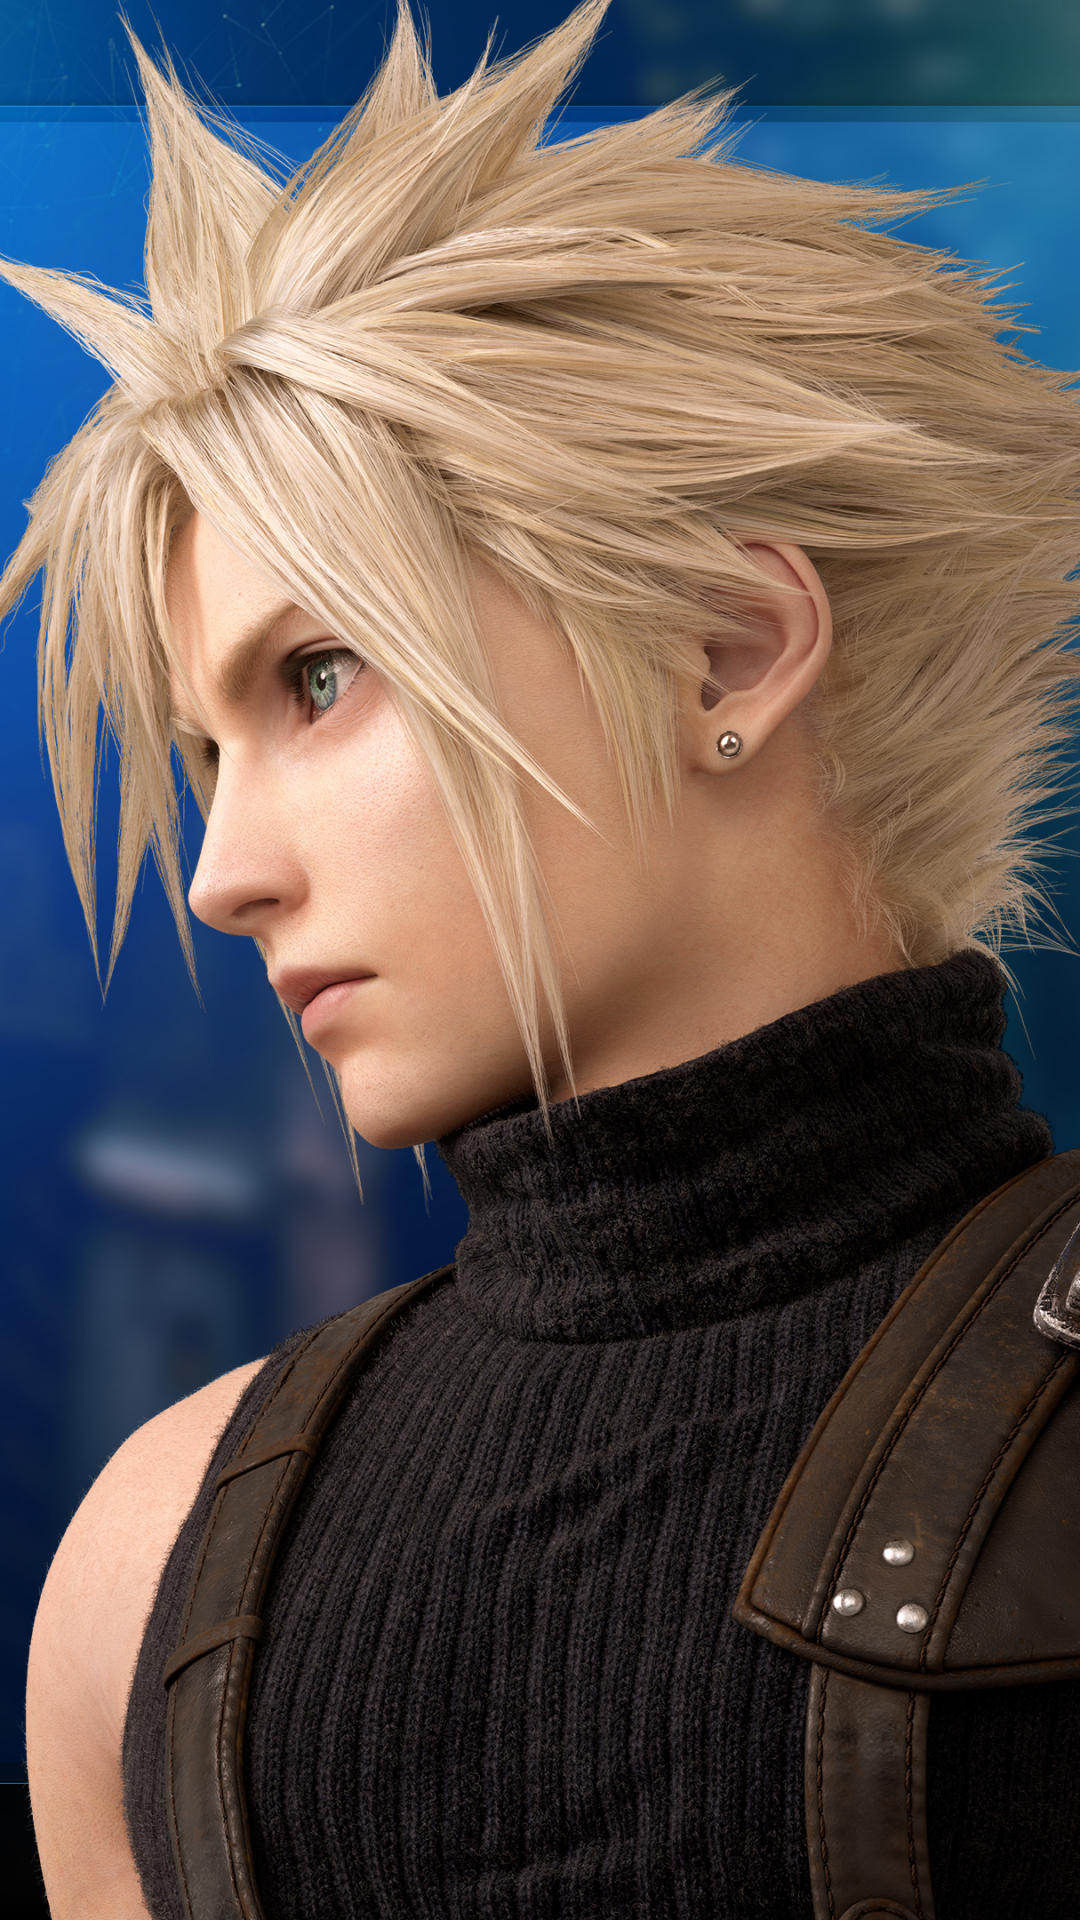  Final Fantasy Vii Remake HQ Background Images